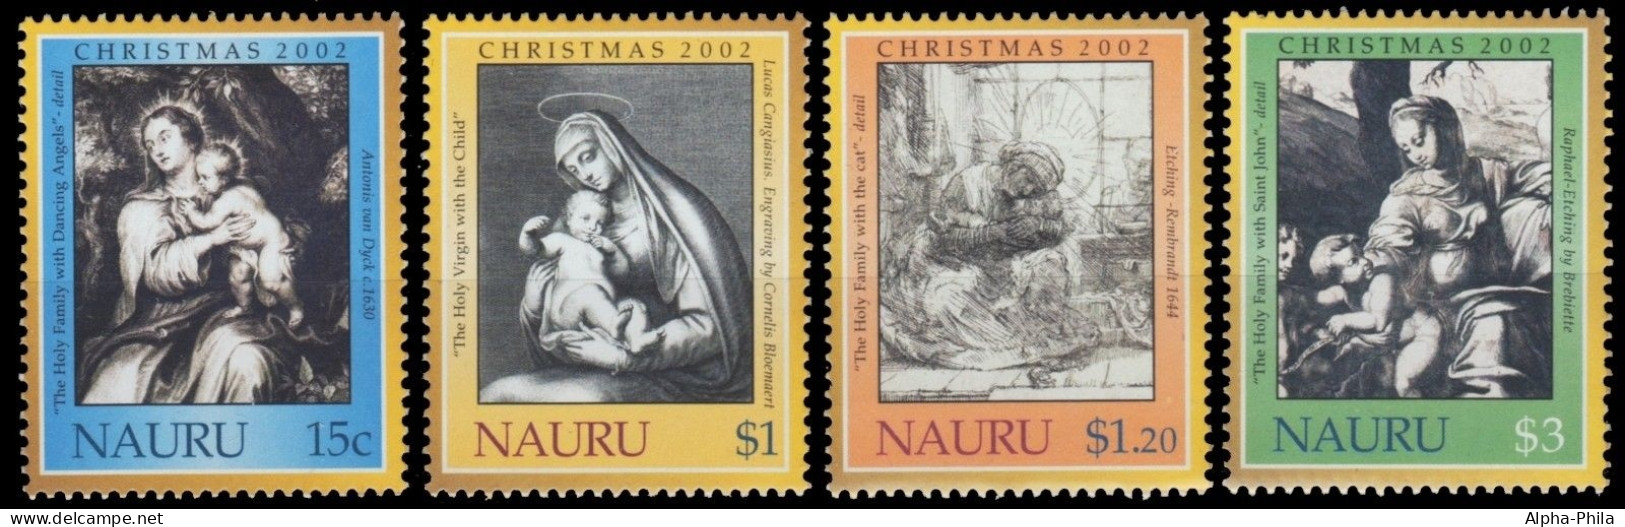 Nauru 2002 - Mi-Nr. 549-552 ** - MNH - Weihnachten / X-mas - Nauru